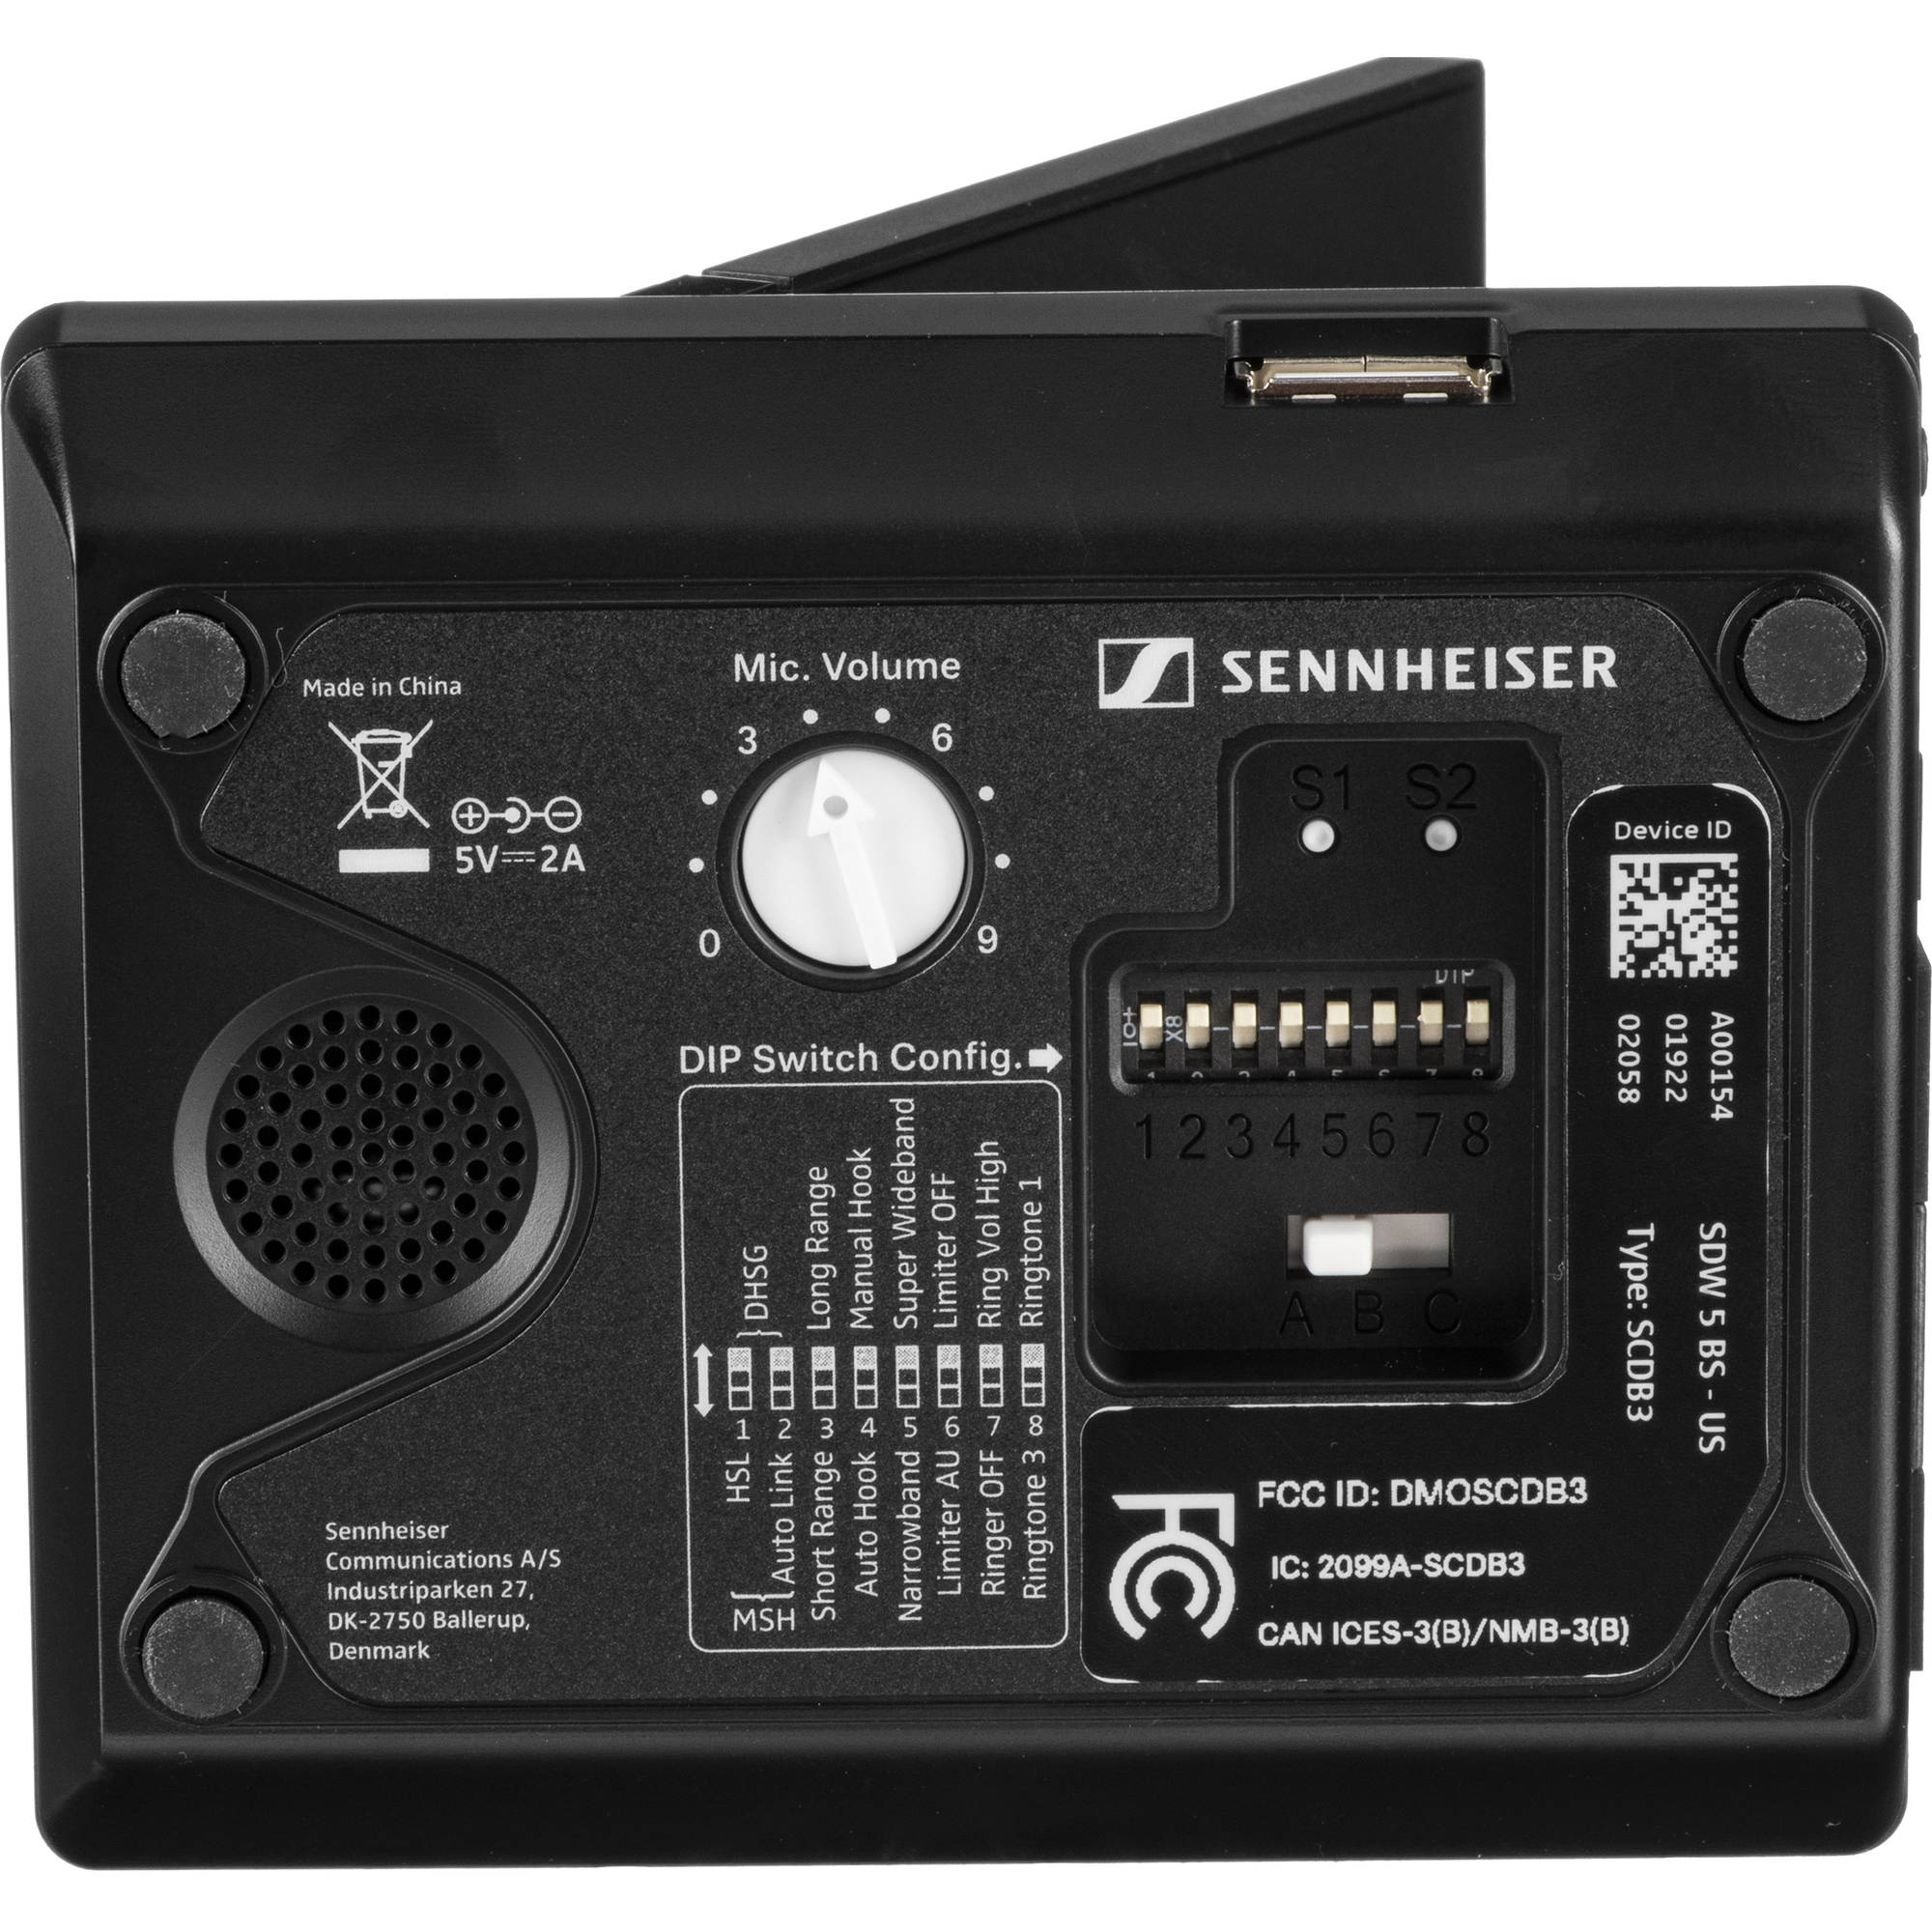 Sennheiser SDW 5016 bottom of base and settings